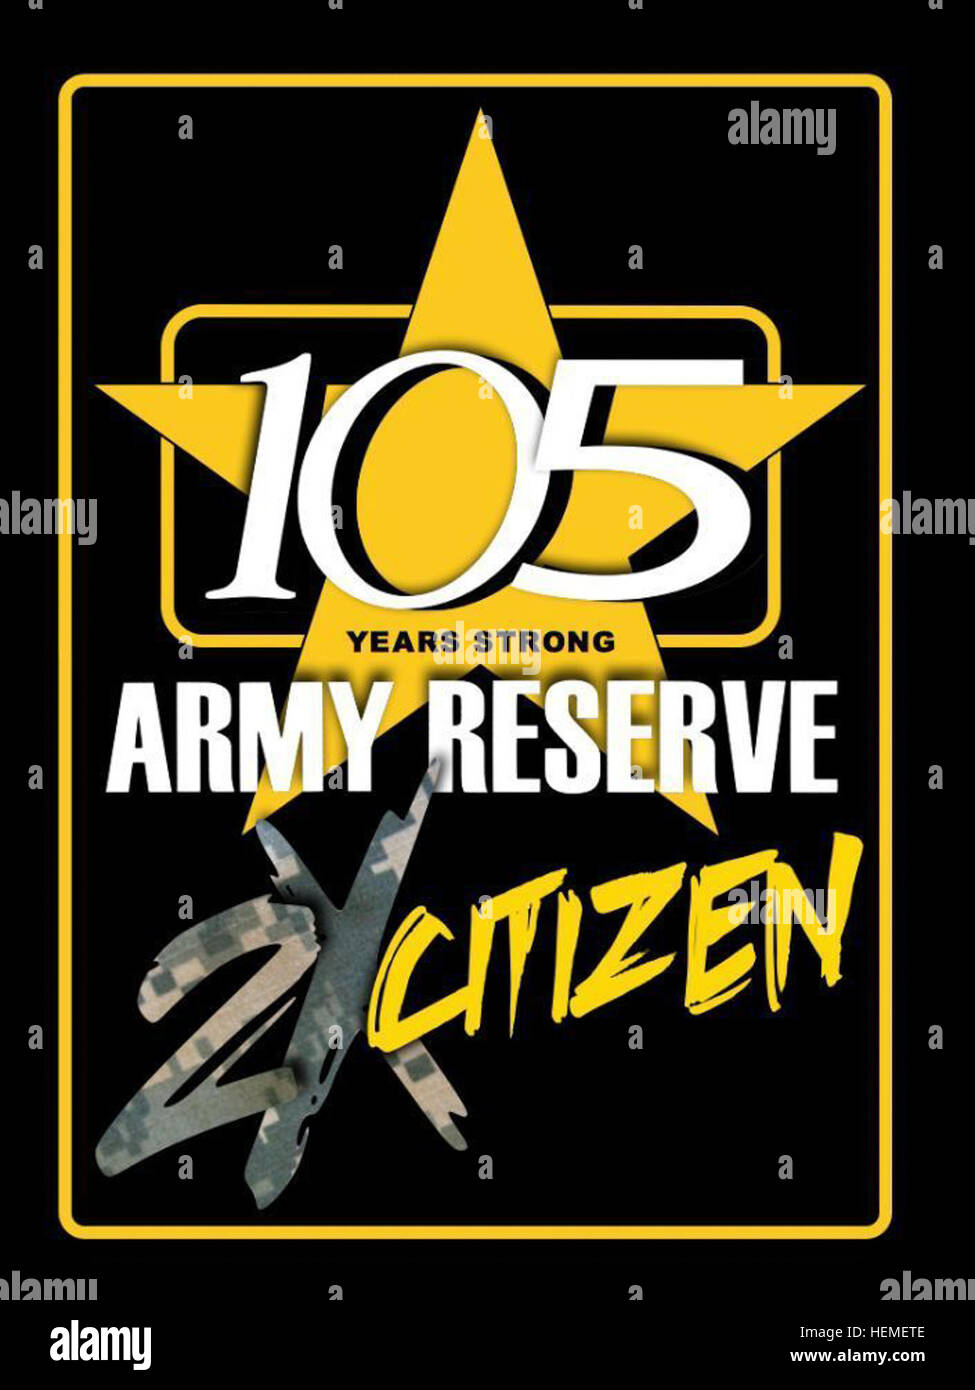 Am Dienstag, den 23. April wird der US Army Reserve ihren 105. Geburtstag feiern.  Gegründet 1908 als medizinische Reserve-Korps, ist heutige Armee-Reserve eine wichtige kostenlose Betriebskraft, die den gesamten Vereinigten Staaten unterstützt. Der Army Reserve besteht aus mehr als 200.000 "Bürger-Soldaten", und ca. 11.900 jener Soldaten sind derzeit im Einsatz rund um die Welt, die lebensrettende und lebenserhaltende Funktionen für Joint Force Operationen. 105. Army Reserve Jubiläum 130120-A-IL196-002 Stockfoto